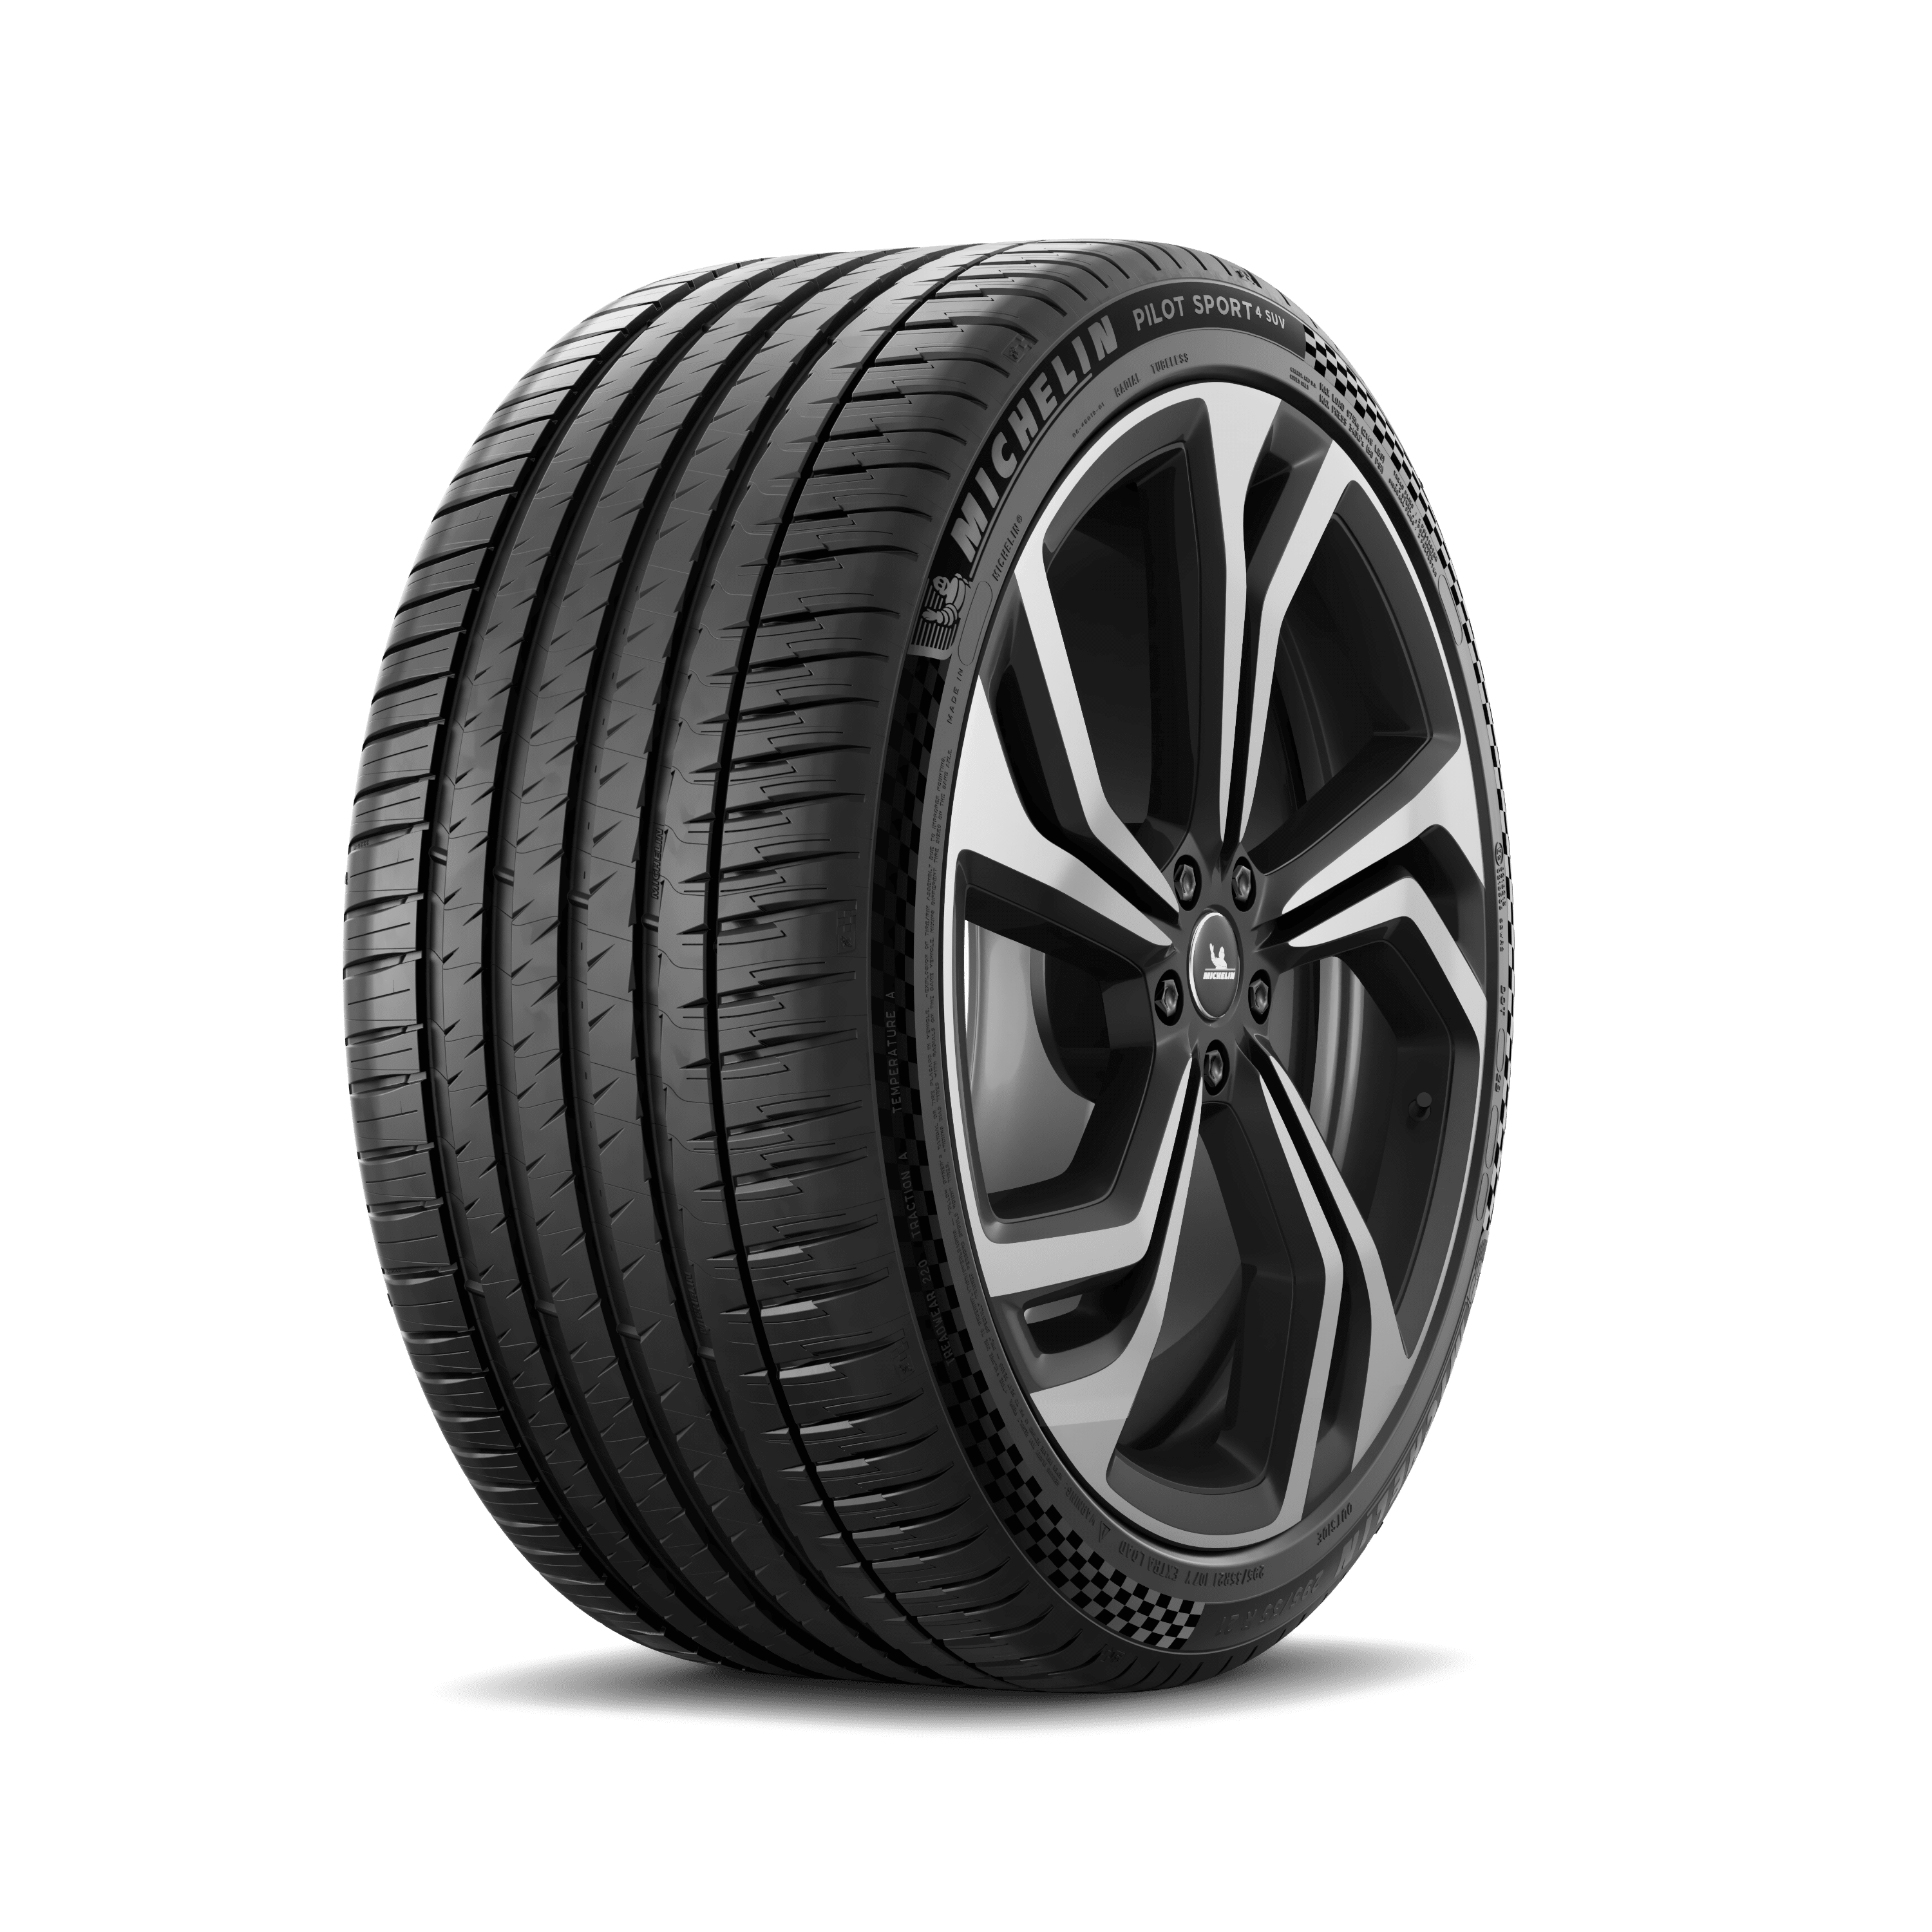 MICHELIN Pilot Sport 4 SUV - Car Tire | MICHELIN USA